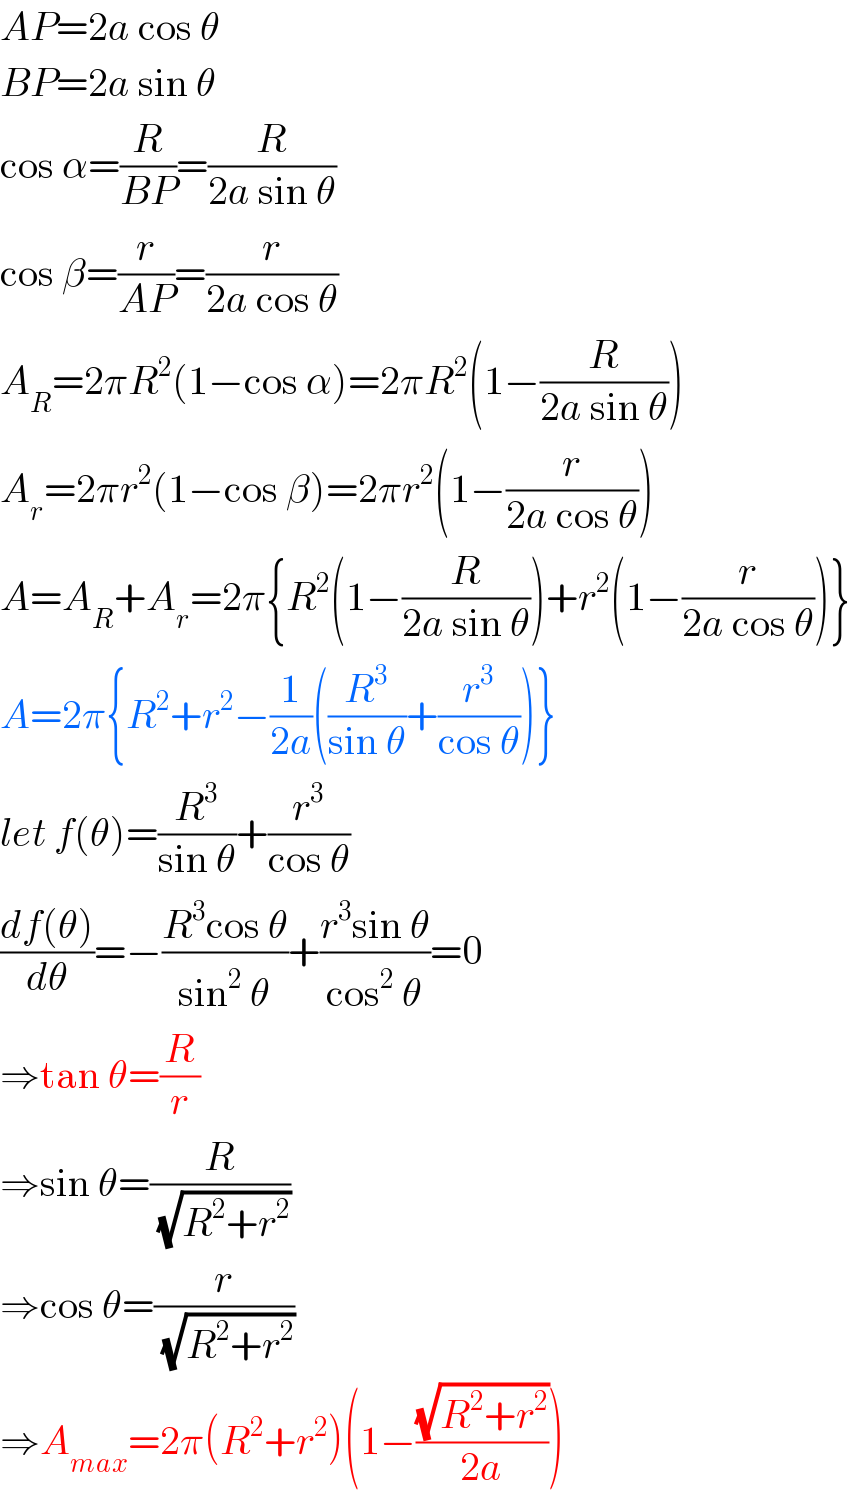 AP=2a cos θ  BP=2a sin θ  cos α=(R/(BP))=(R/(2a sin θ))  cos β=(r/(AP))=(r/(2a cos θ))  A_R =2πR^2 (1−cos α)=2πR^2 (1−(R/(2a sin θ)))  A_r =2πr^2 (1−cos β)=2πr^2 (1−(r/(2a cos θ)))  A=A_R +A_r =2π{R^2 (1−(R/(2a sin θ)))+r^2 (1−(r/(2a cos θ)))}  A=2π{R^2 +r^2 −(1/(2a))((R^3 /(sin θ))+(r^3 /(cos θ)))}  let f(θ)=(R^3 /(sin θ))+(r^3 /(cos θ))  ((df(θ))/dθ)=−((R^3 cos θ)/(sin^2  θ))+((r^3 sin θ)/(cos^2  θ))=0  ⇒tan θ=(R/r)  ⇒sin θ=(R/(√(R^2 +r^2 )))  ⇒cos θ=(r/(√(R^2 +r^2 )))  ⇒A_(max) =2π(R^2 +r^2 )(1−((√(R^2 +r^2 ))/(2a)))  